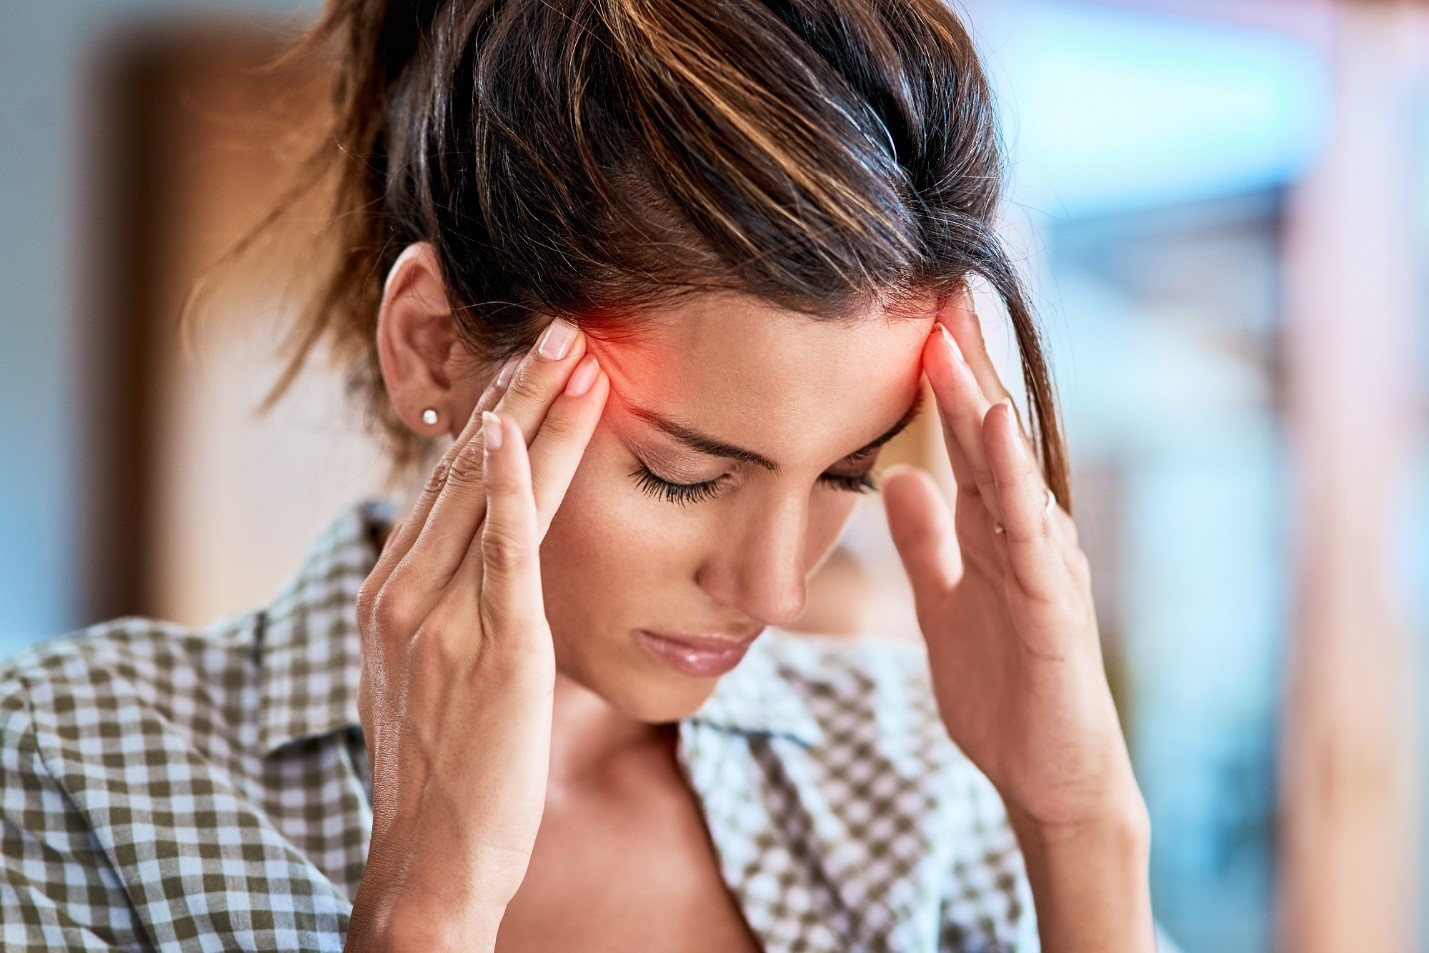   Căng thẳng có thể gây đau đầu nghiêm trọng  